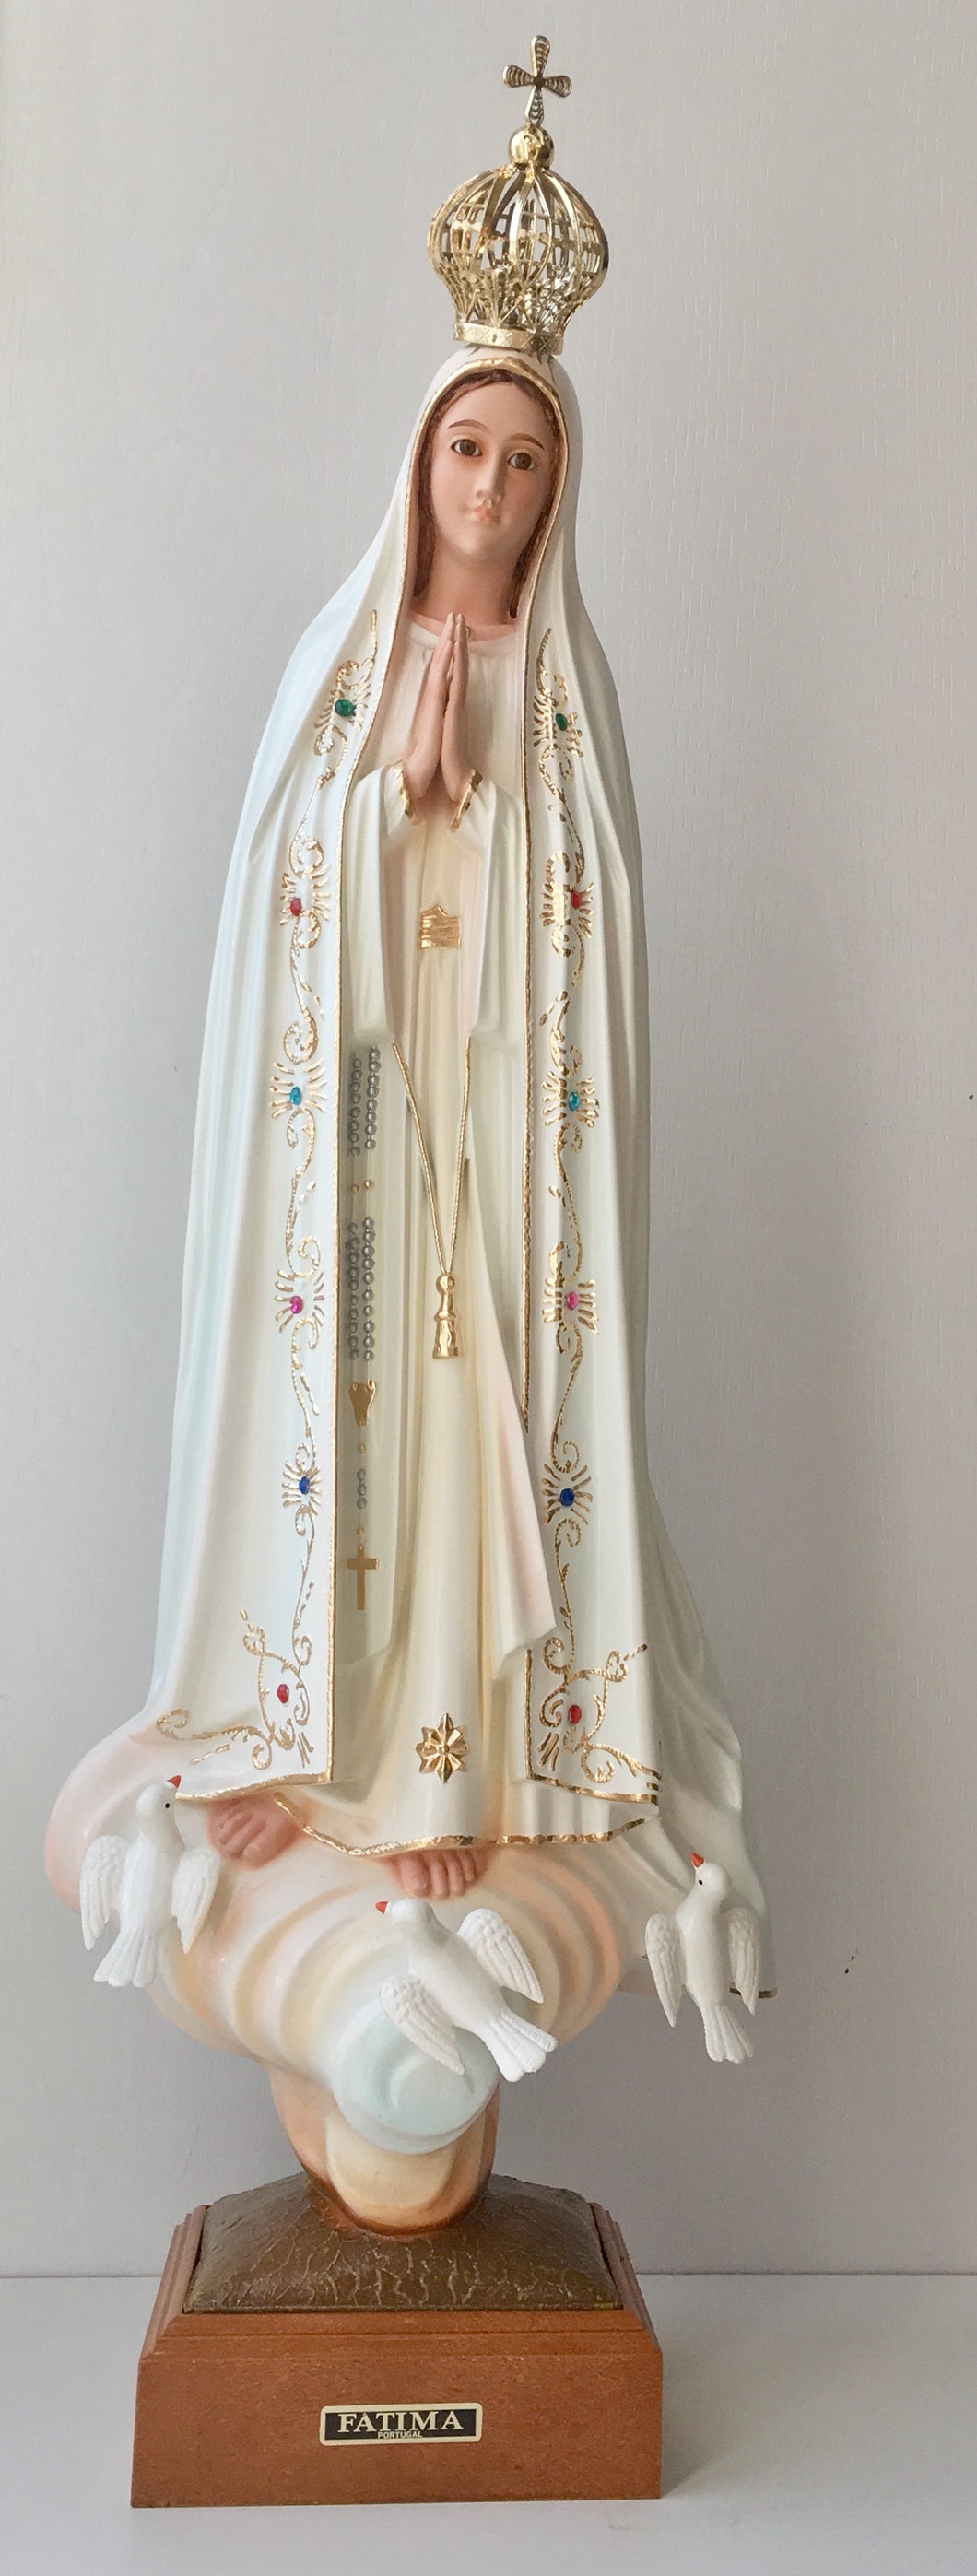 Virgen de Fatima 24